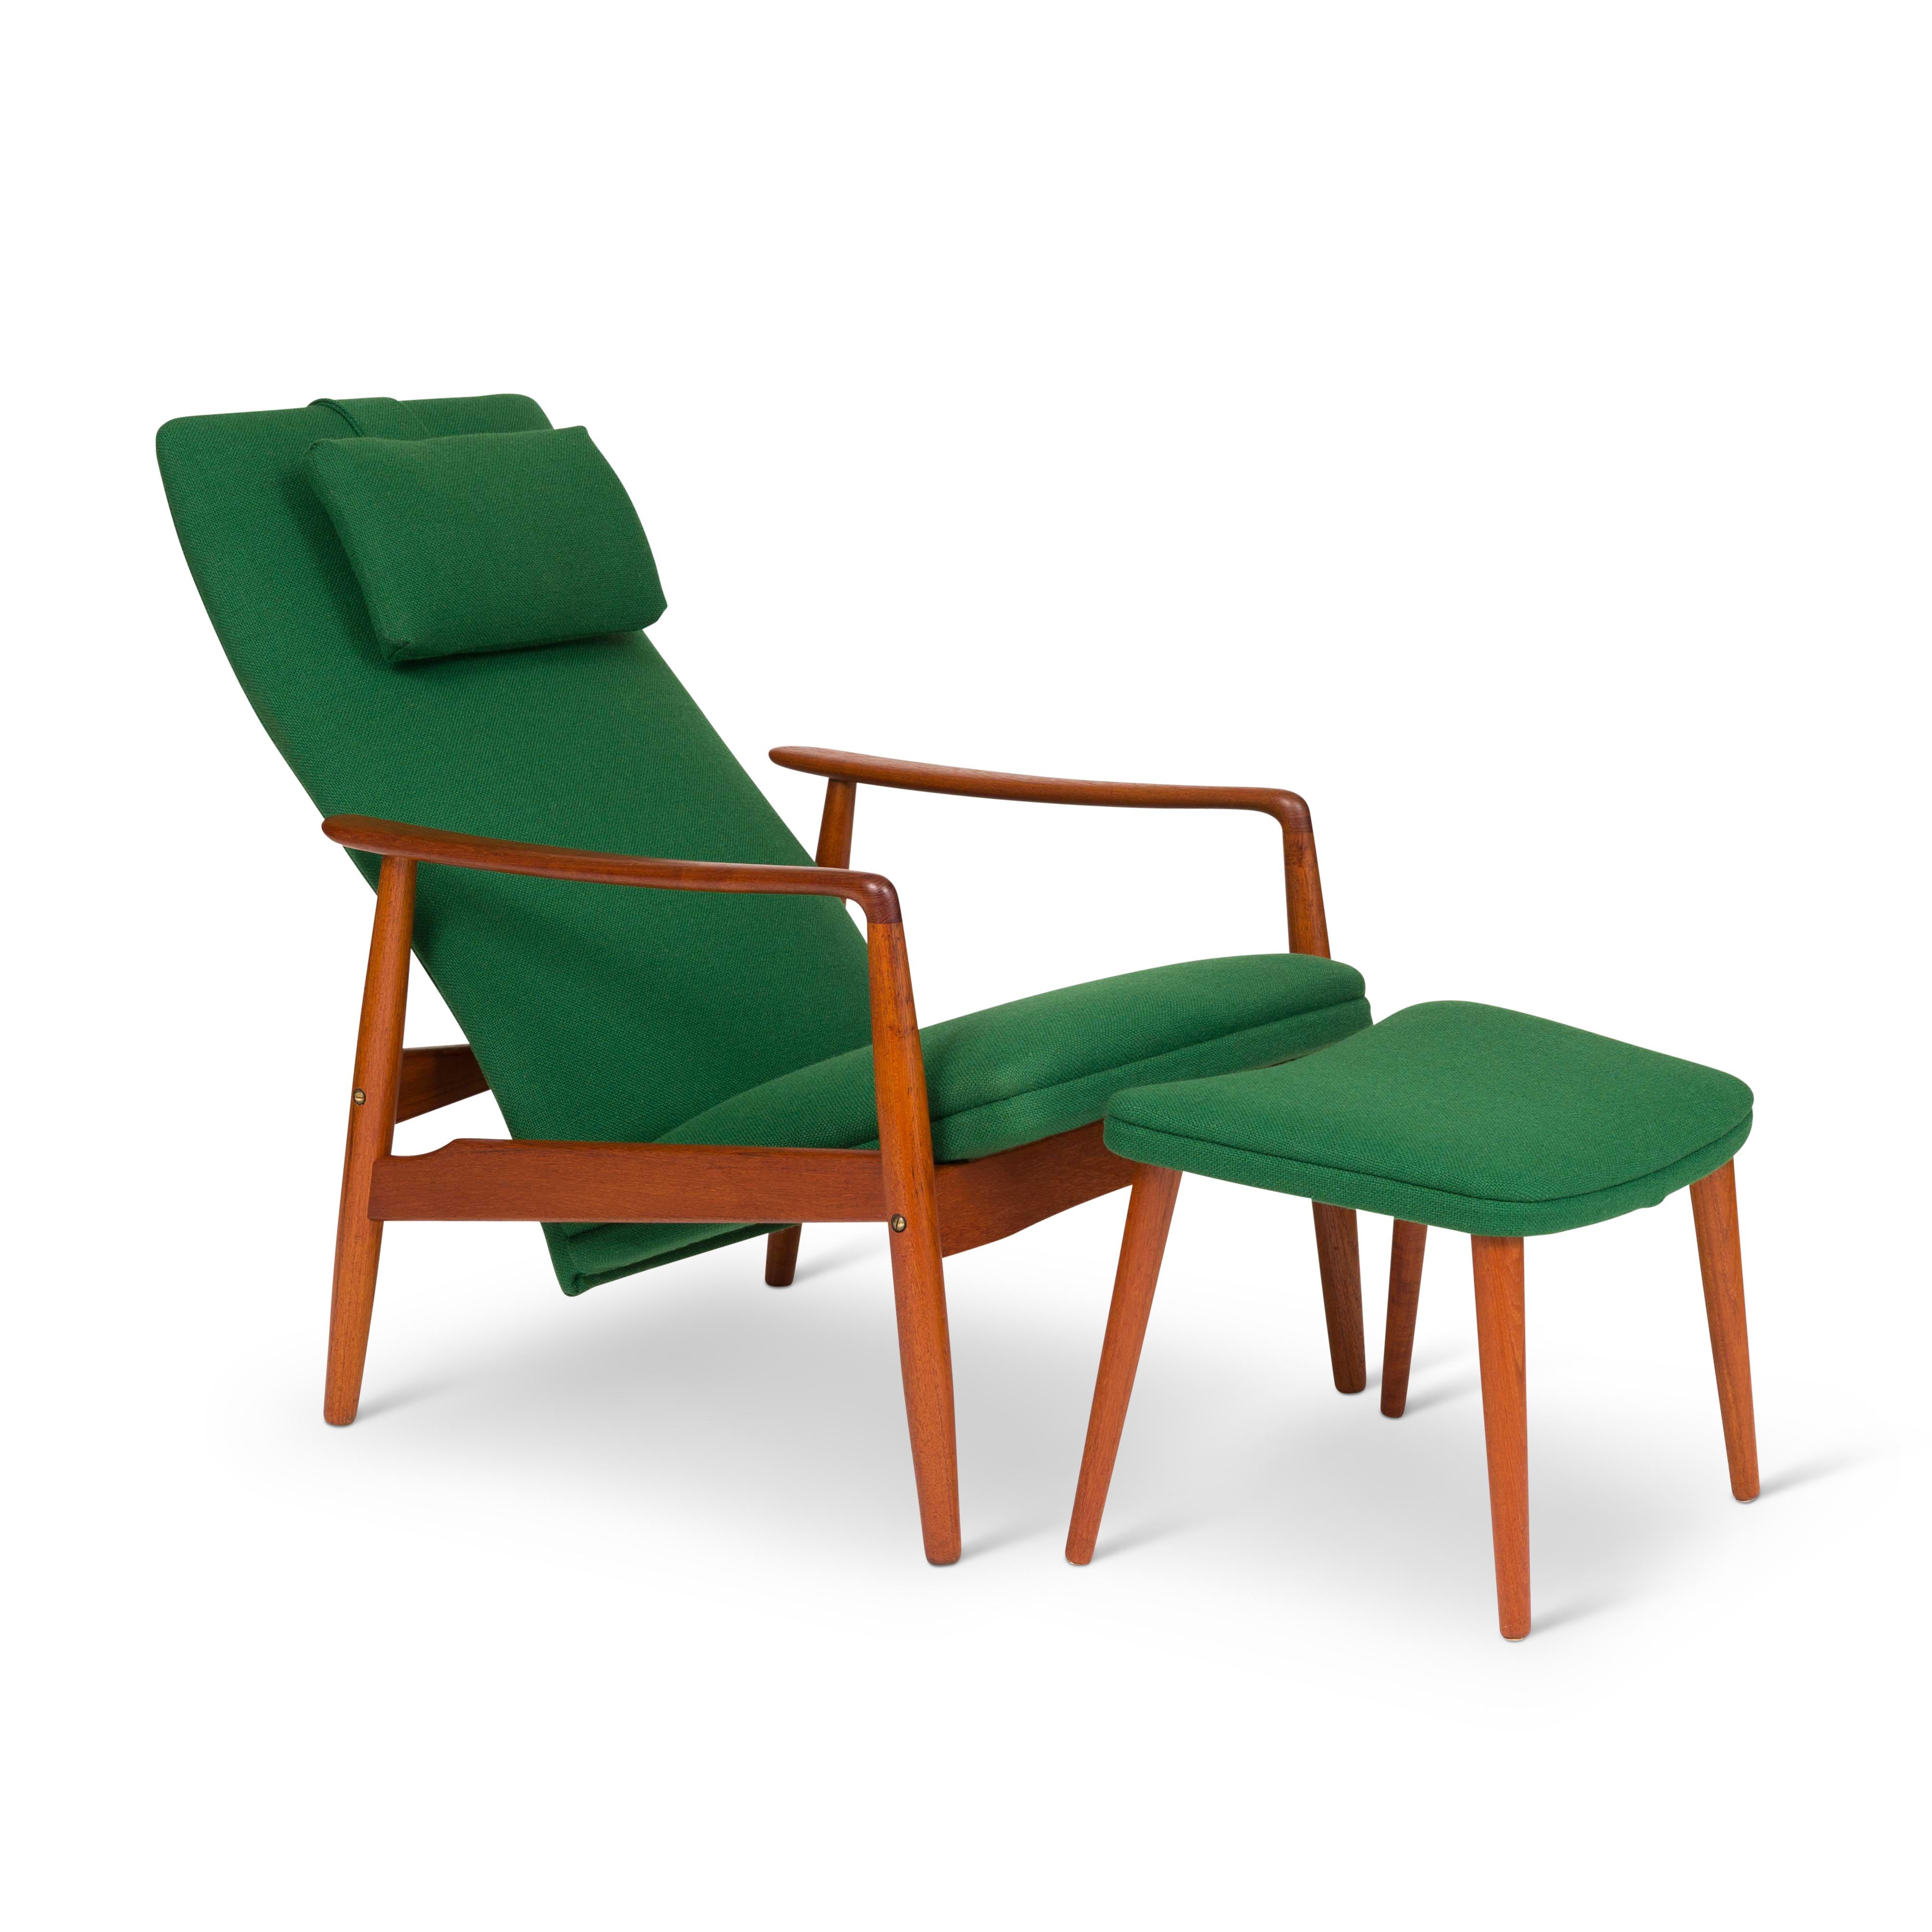 Chaise longue vintage super confortable à haut dossier et ottoman conçus par Svend Langkilde pour SL Mobler Danemark. La chaise longue est dotée d'un cadre en teck massif sculpté et s'incline manuellement. Récemment retapissé avec une nouvelle